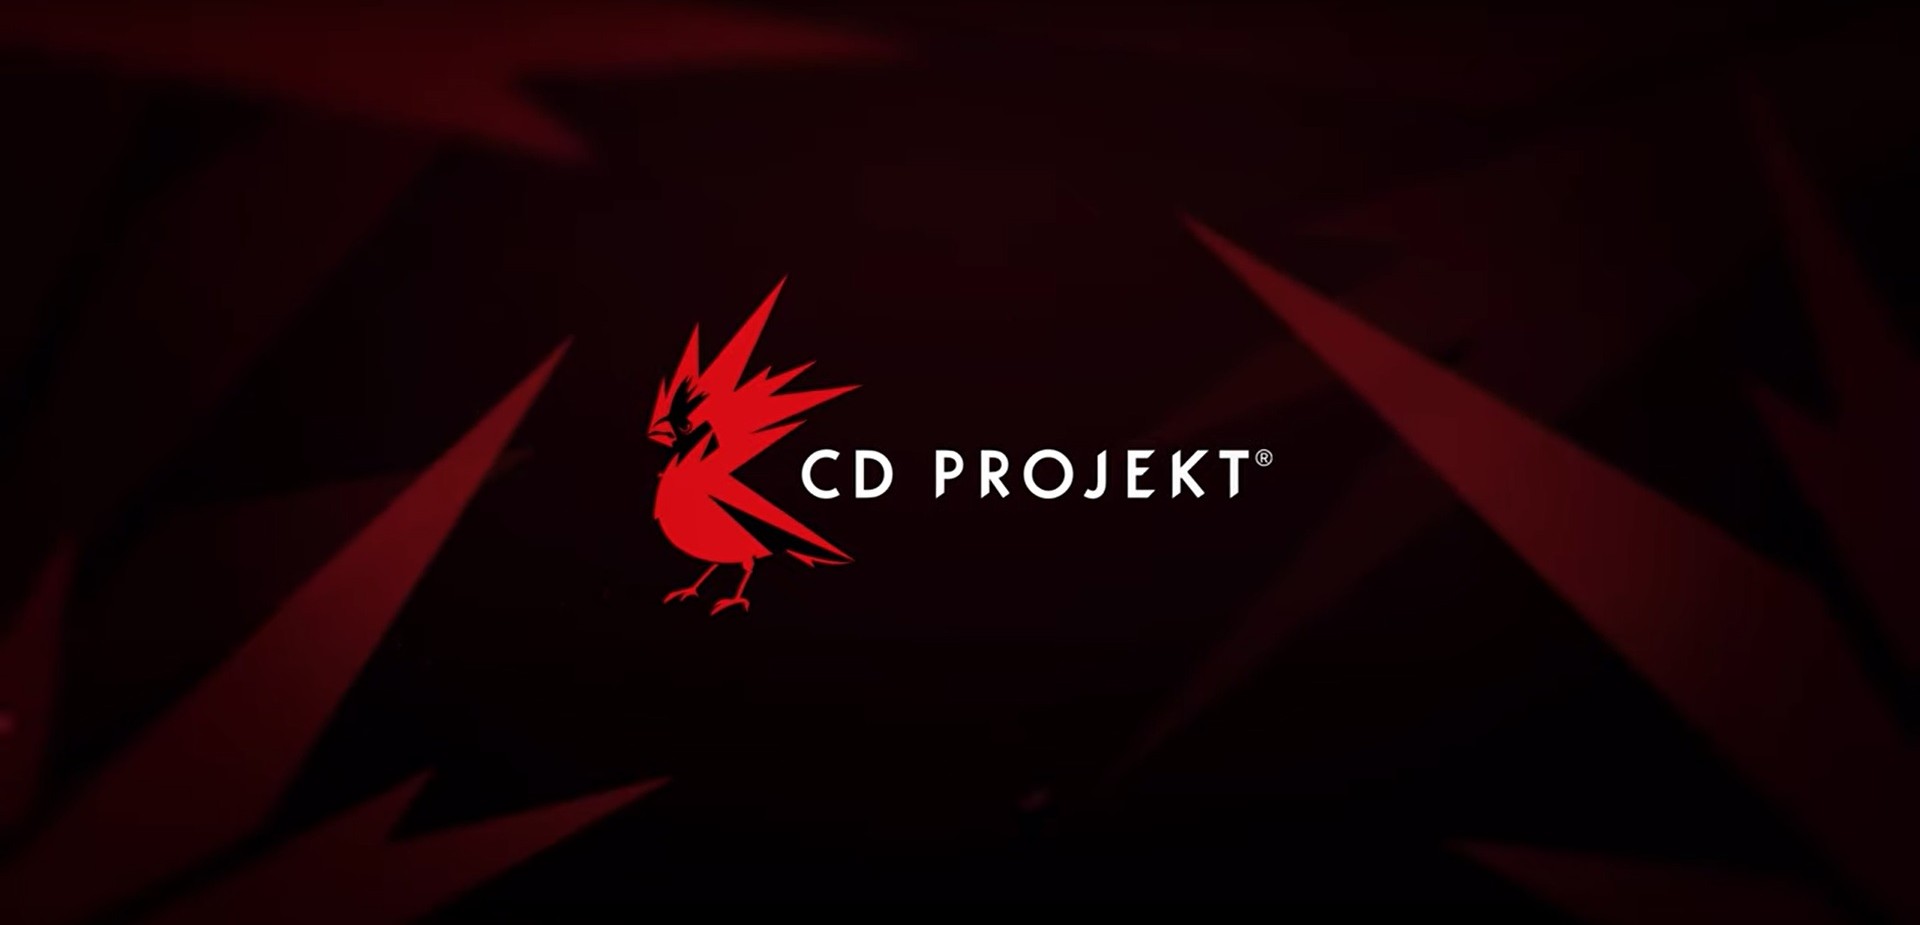 CD Projekt RED สัญญาว่าจะทำการทดสอบทุกเกมจากทุกแพลตฟอร์มก่อนวางจำหน่ายจริง